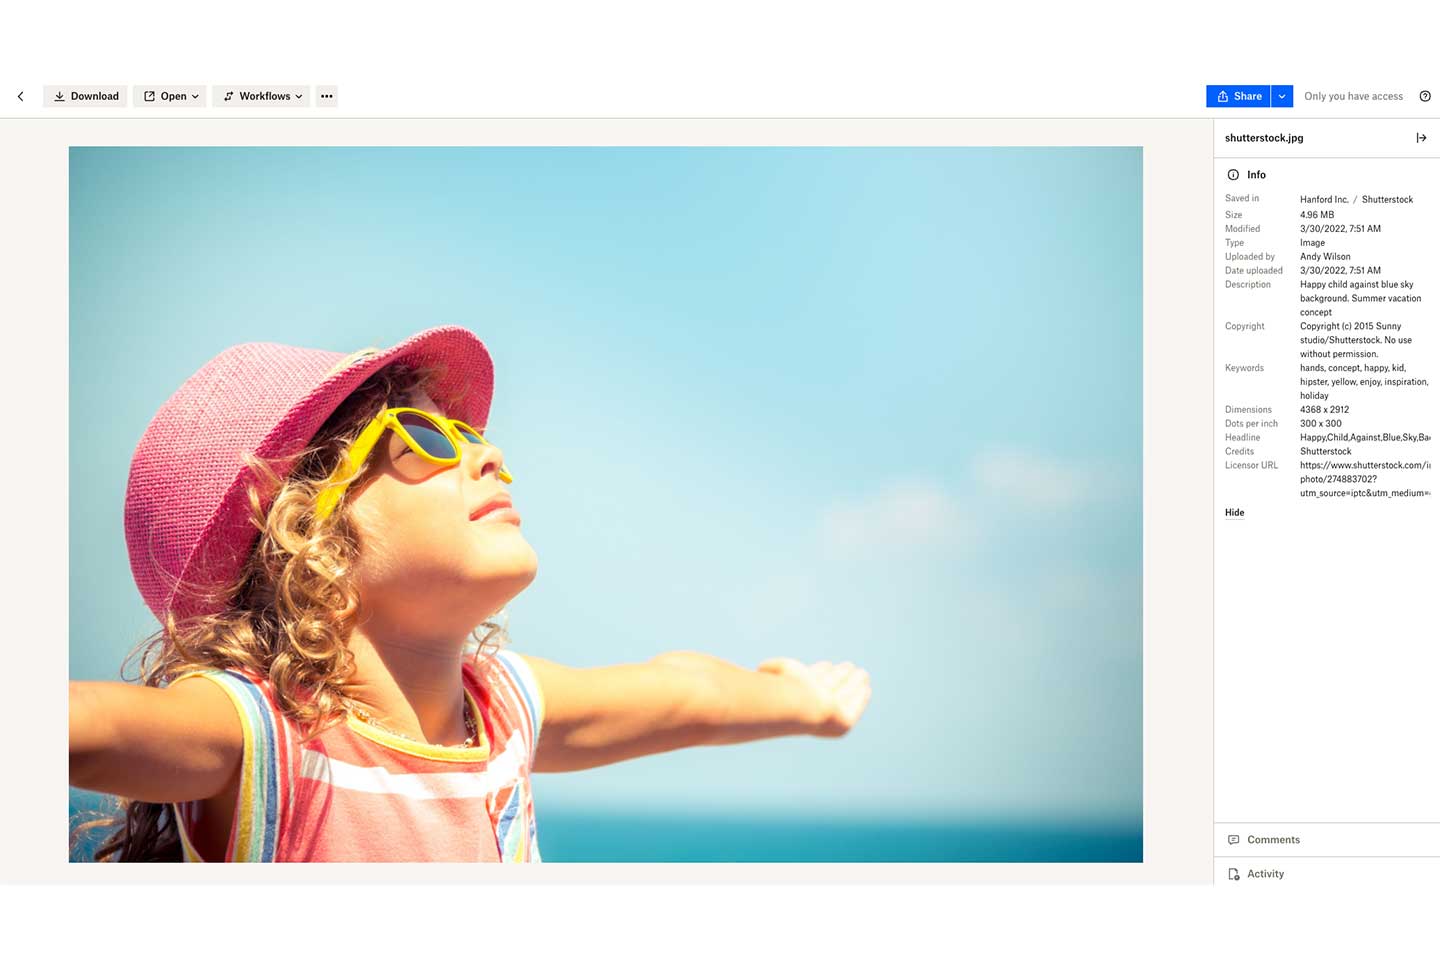 Foto eines jungen Mädchens am Strand als Dropbox-Vorschau mit Bilddetails in der rechten Seitenleiste